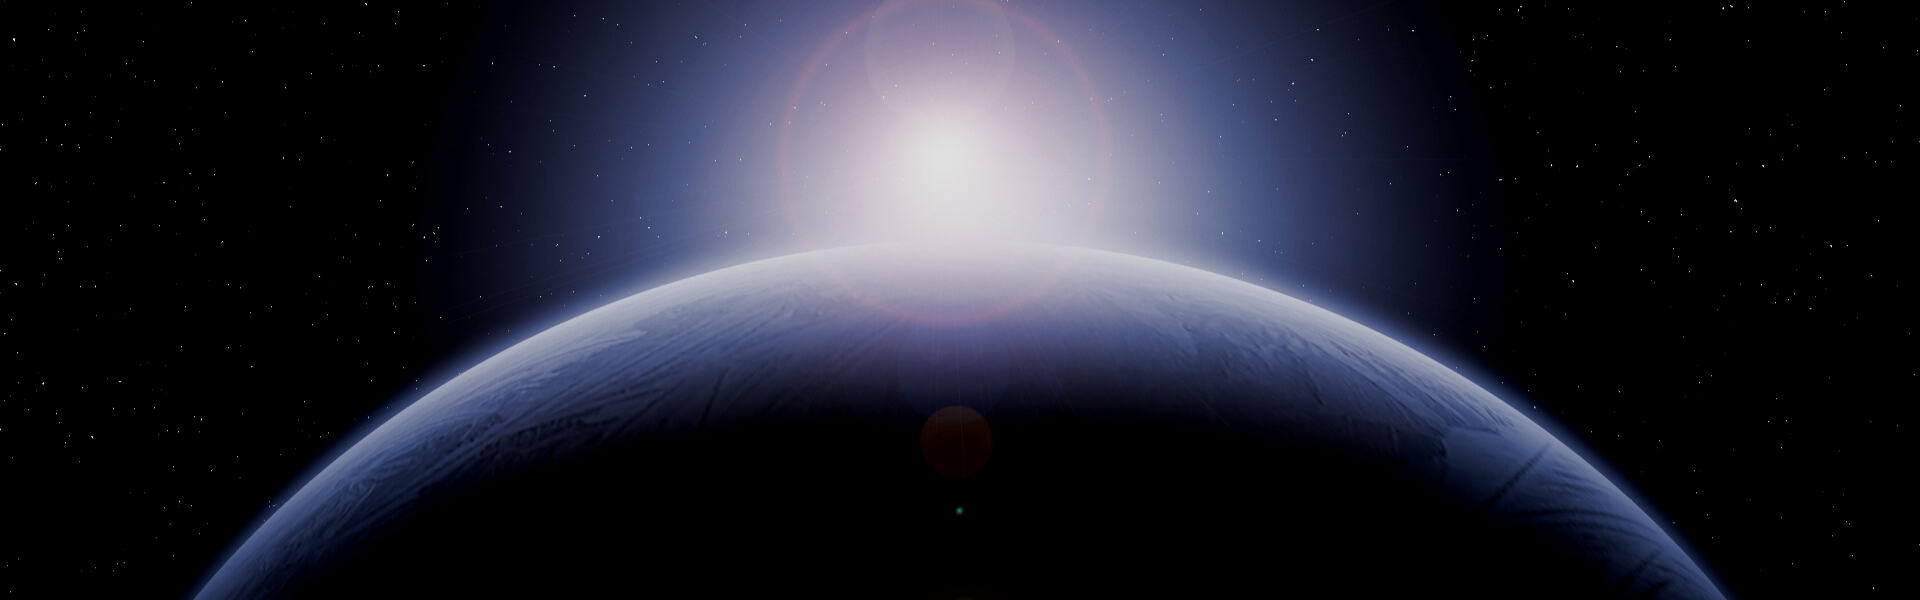 Exoplanetas. Nuevos mundos, futuras tierras